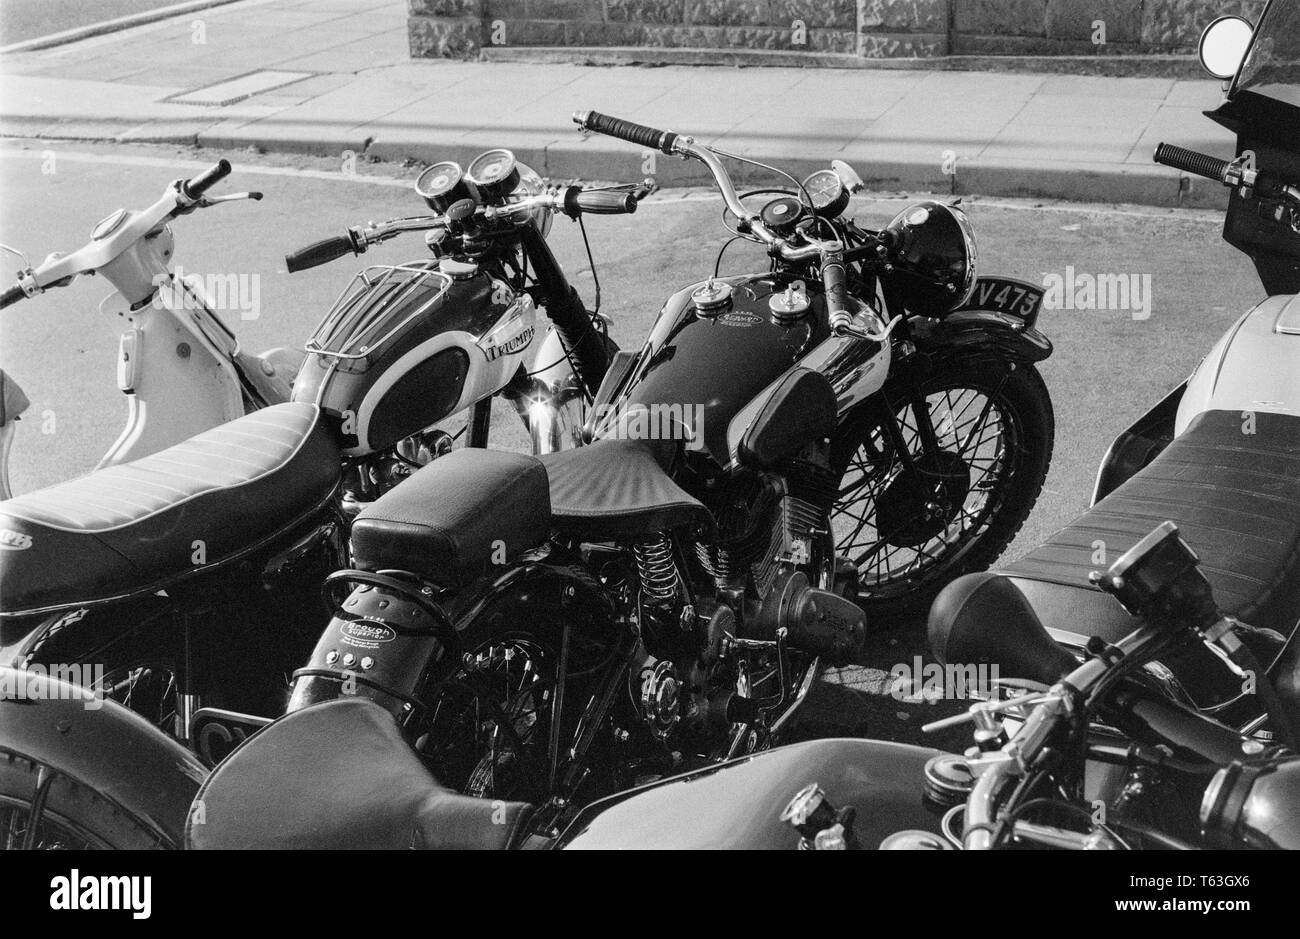 Ein schwarz-weiß Foto in der 1970 s Übersicht Details einer Brough Superior SS 80 Motorrad, und ein Triumph Motorrad, sowohl klassische britische Motorräder. Ein Moped können auch gesehen werden. Stockfoto